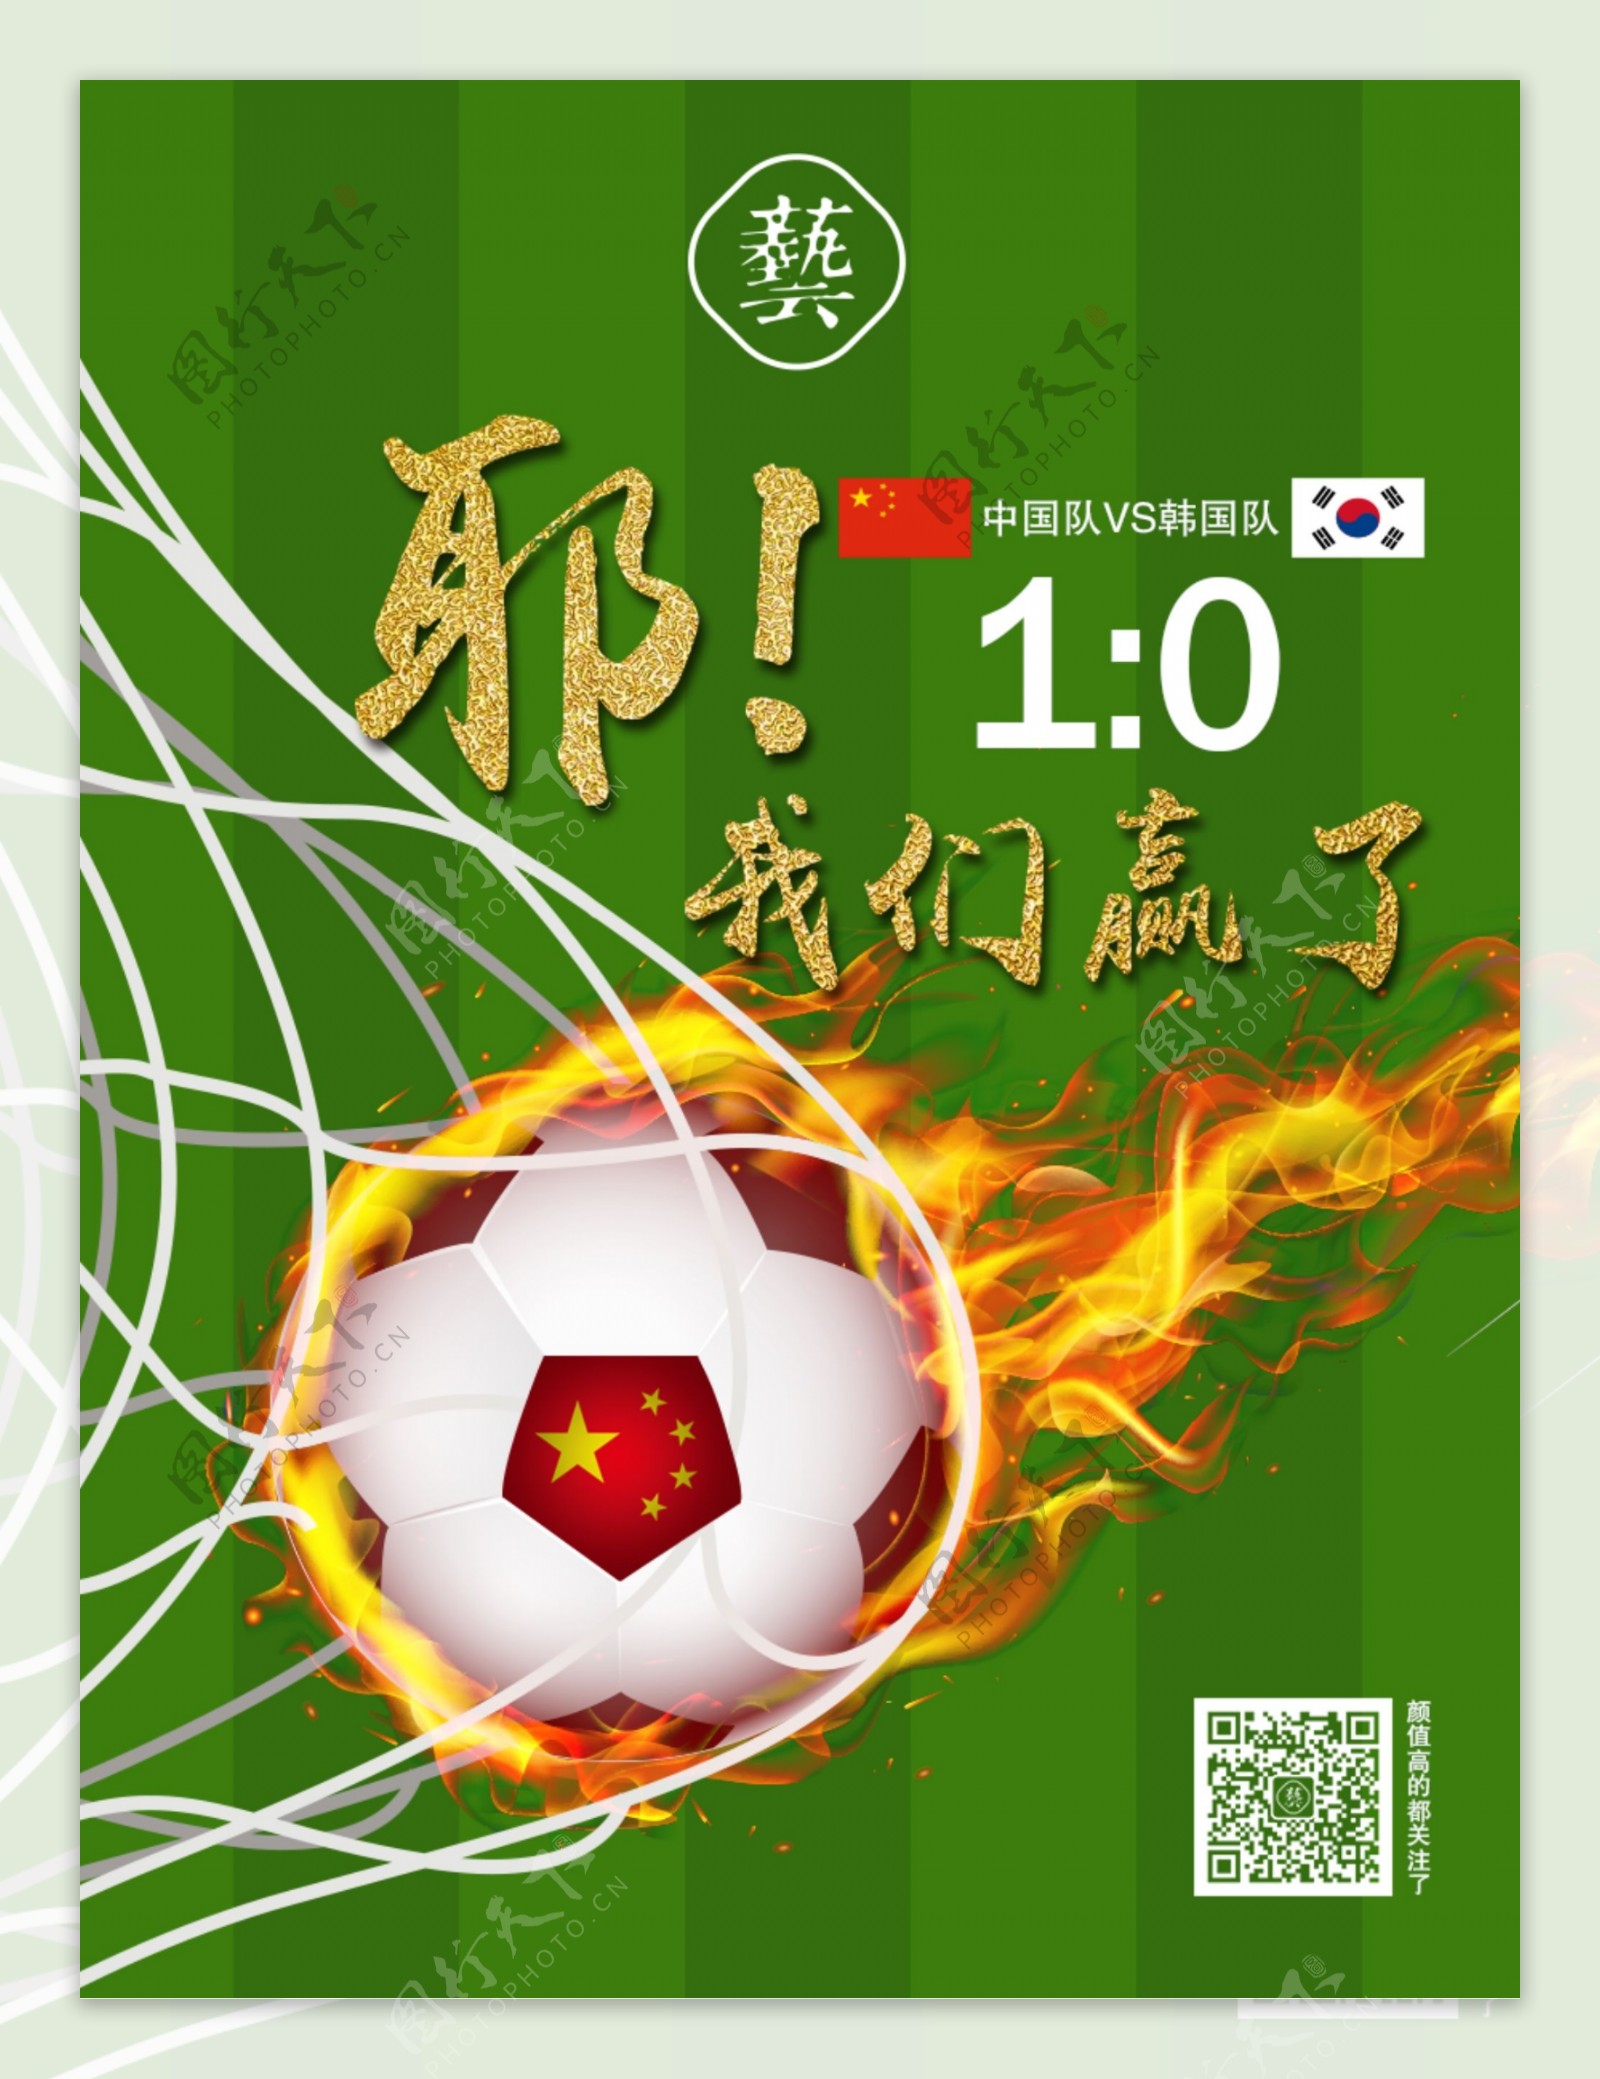 中国足球赢喽